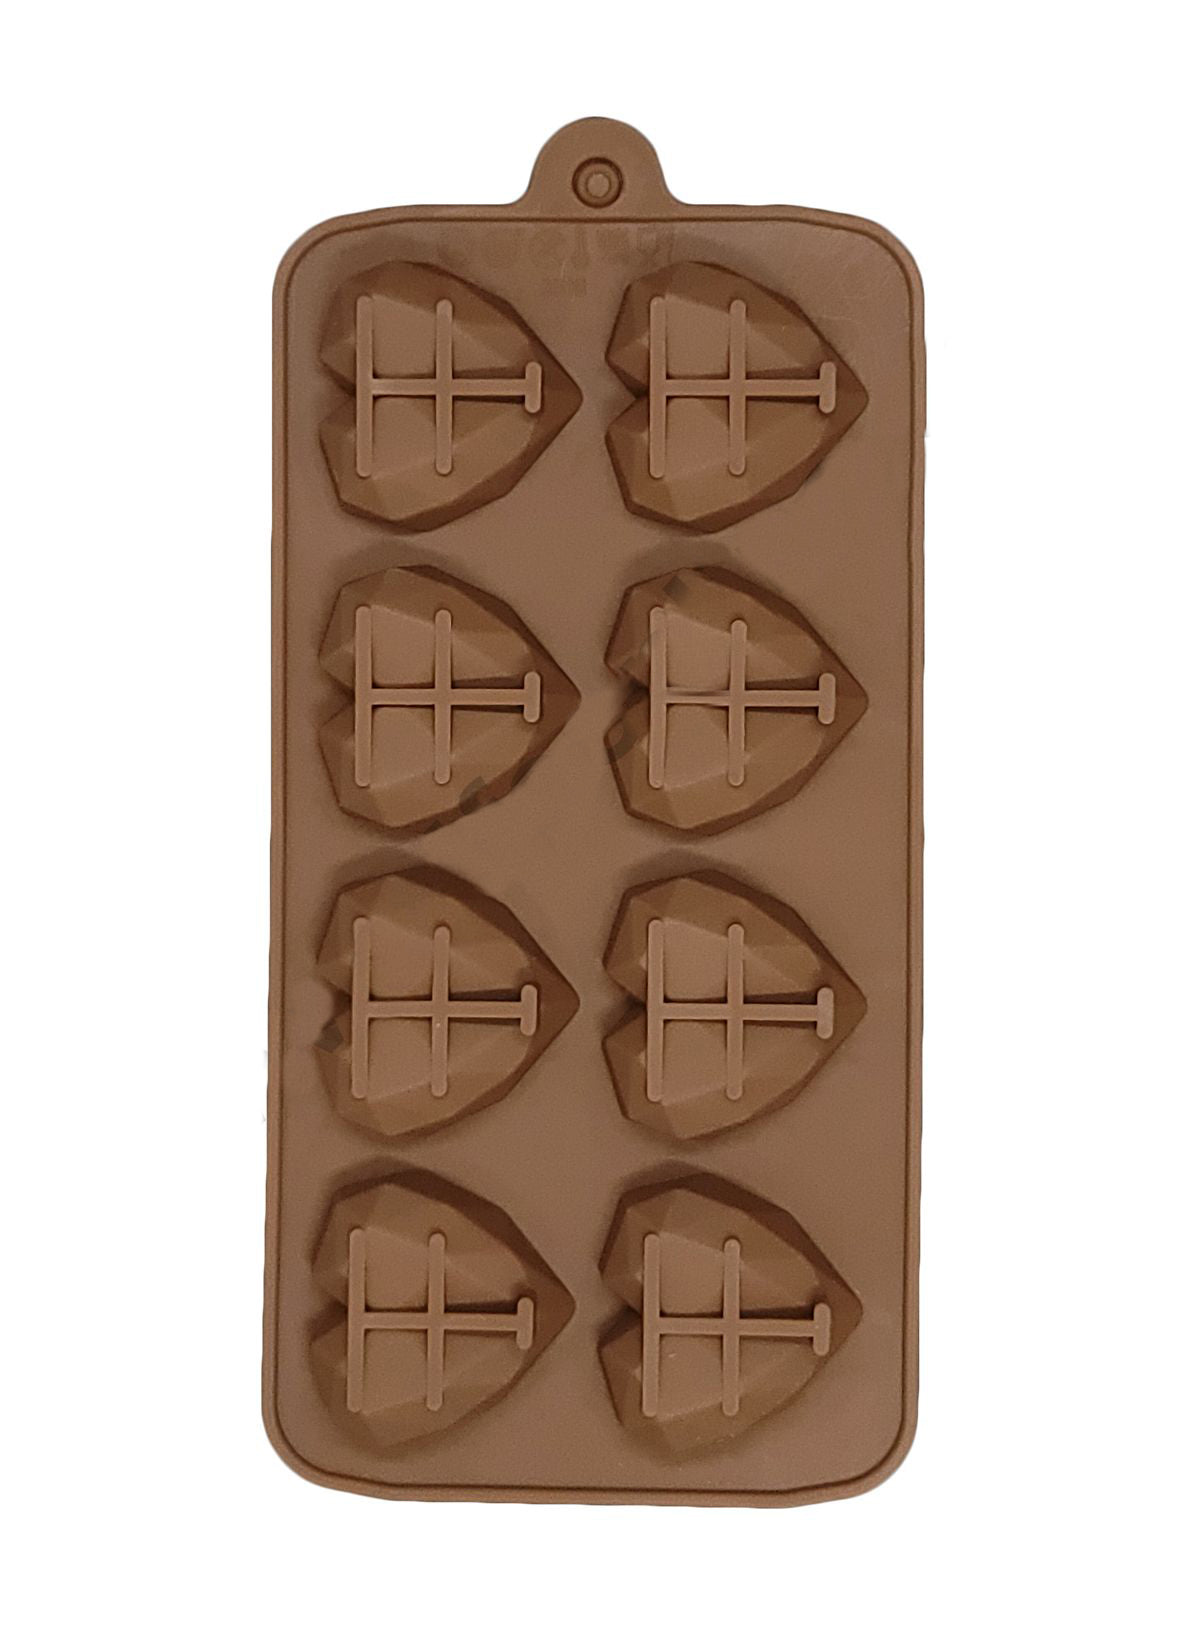 Mini Pinata Heart silicon chocolate mold